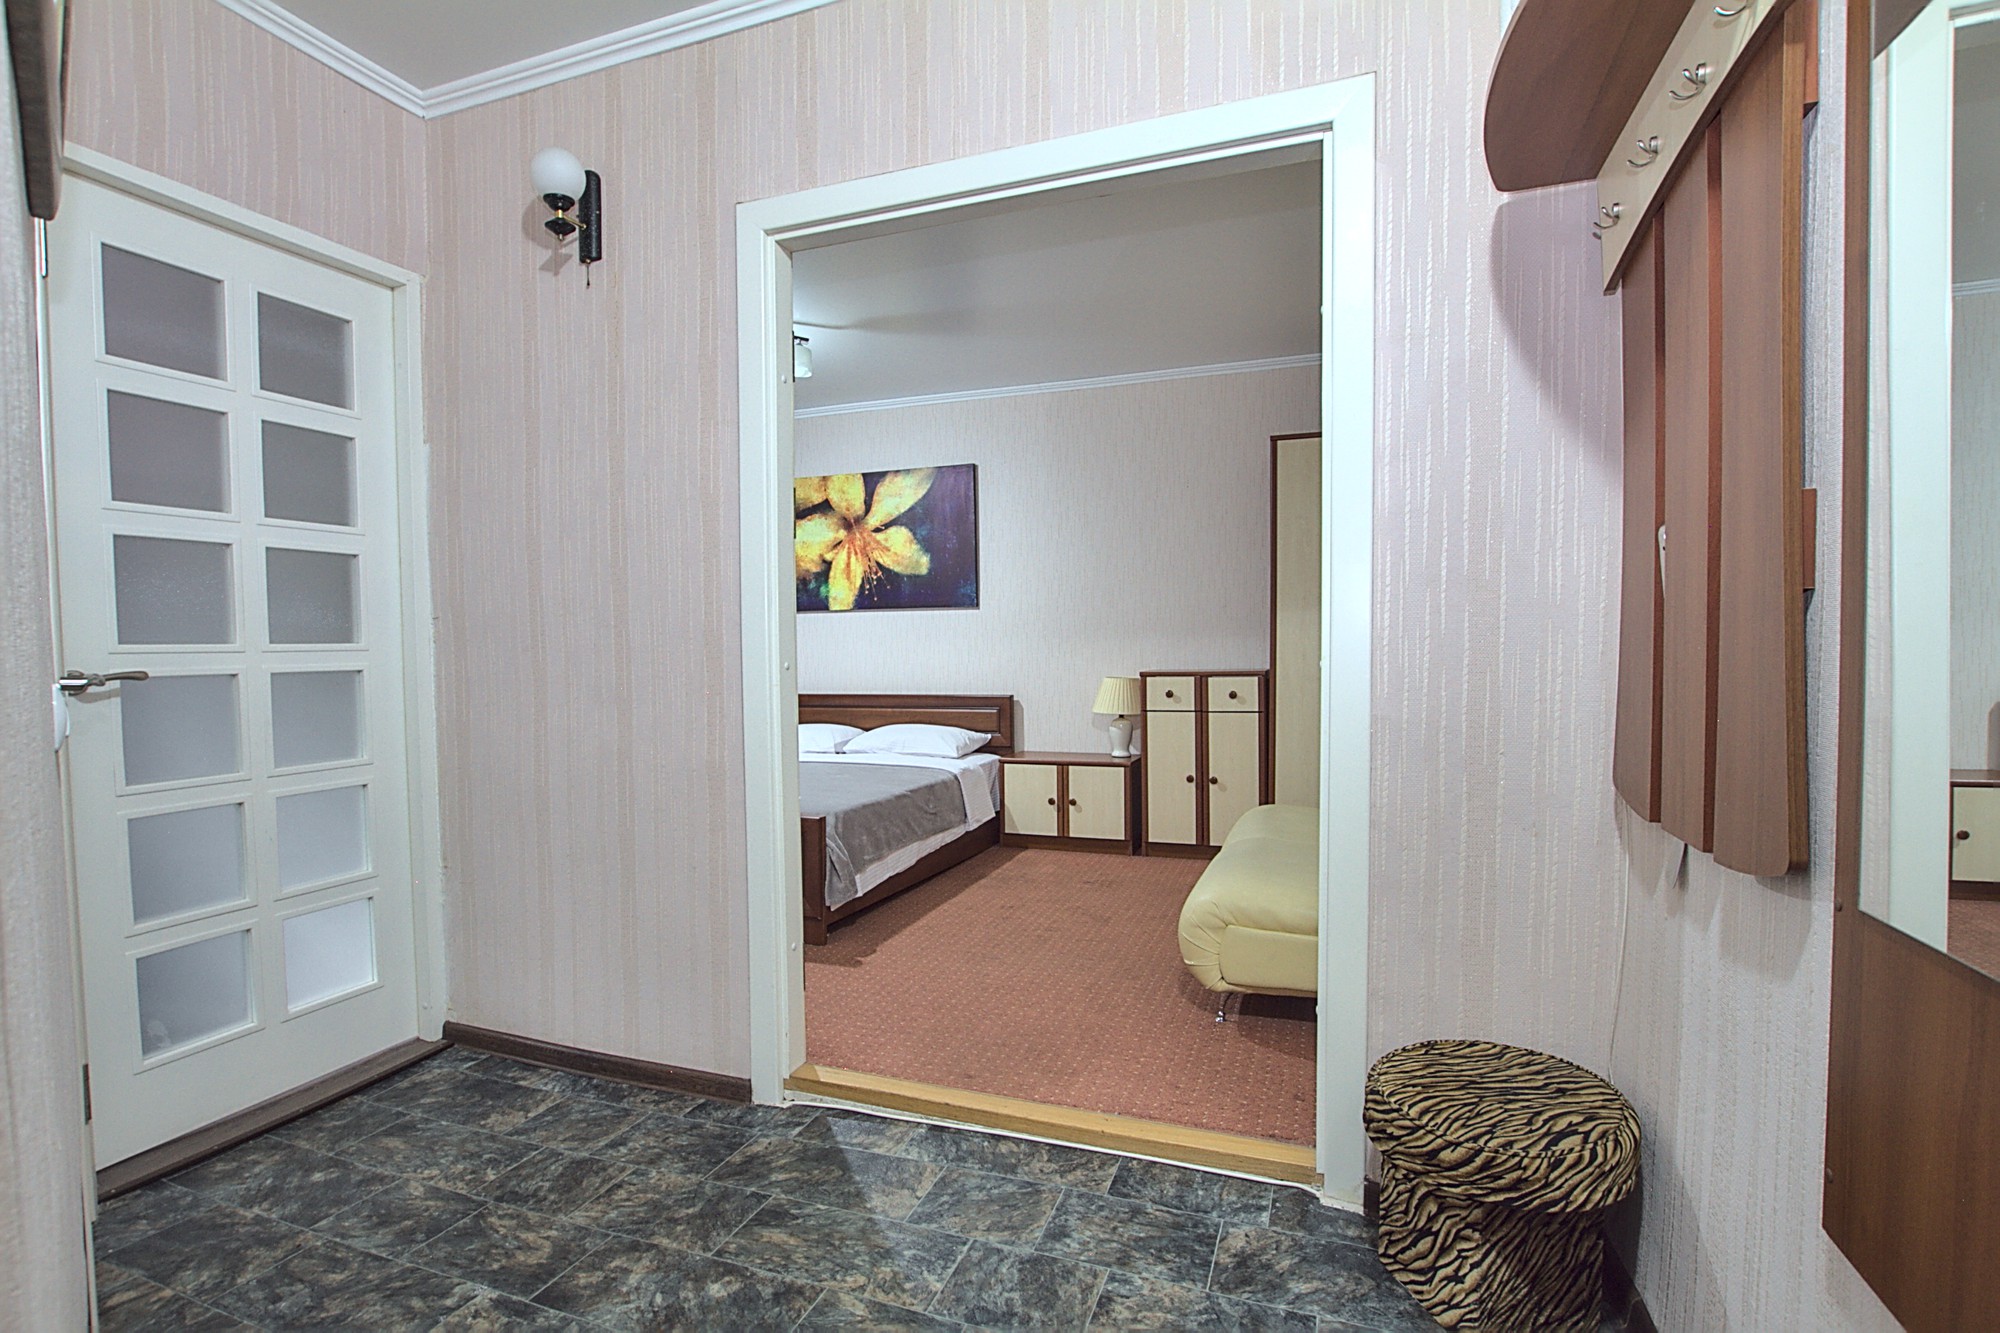 1 комната в аренду в Кишиневе - Chisinau, Grigore Vieru Blvd 14